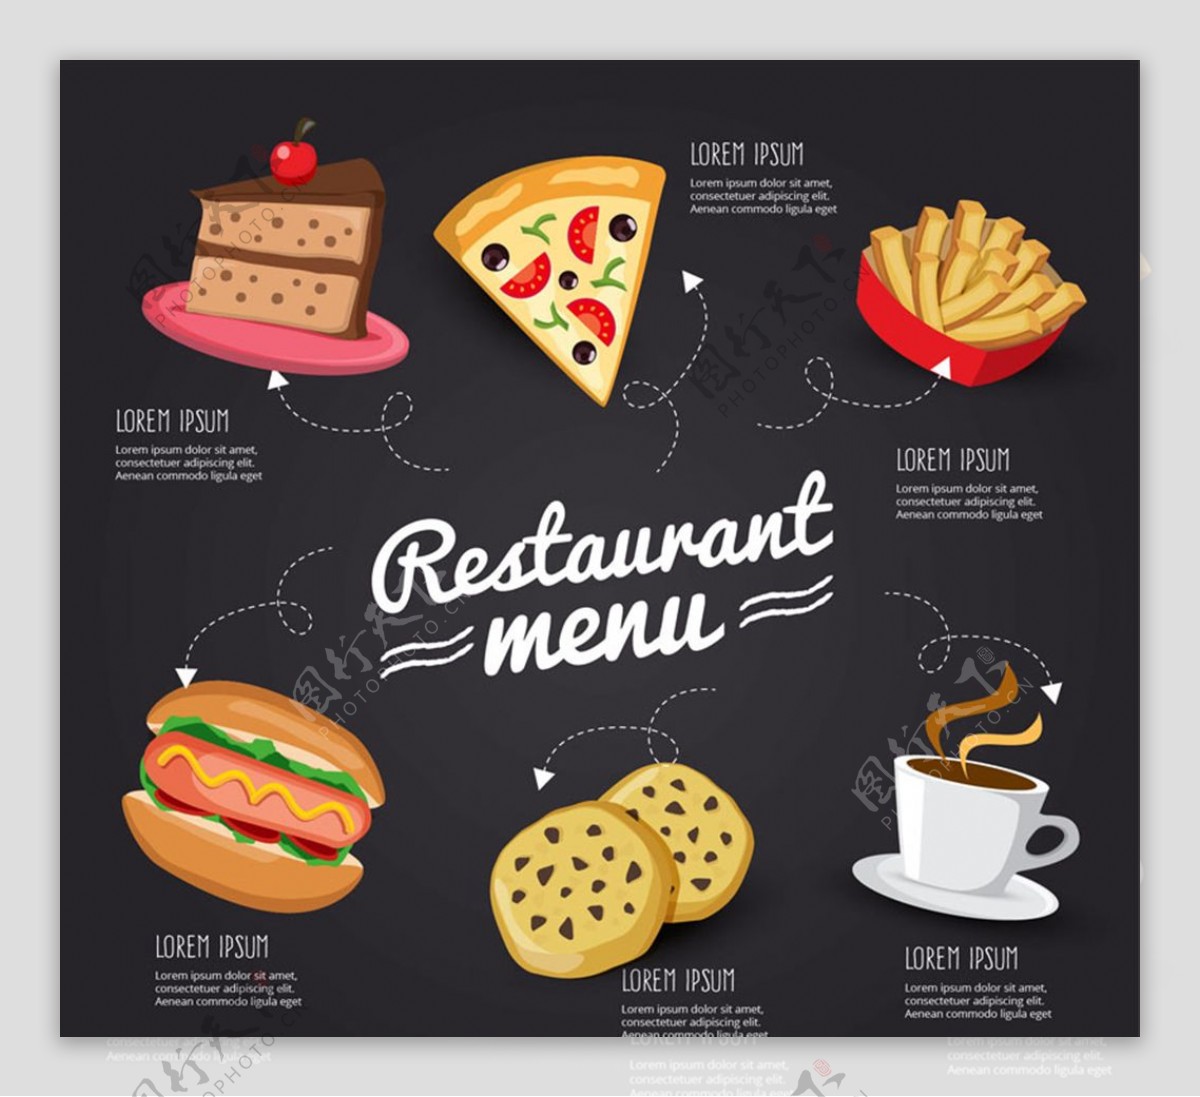 创意快餐馆菜单设计矢量素材